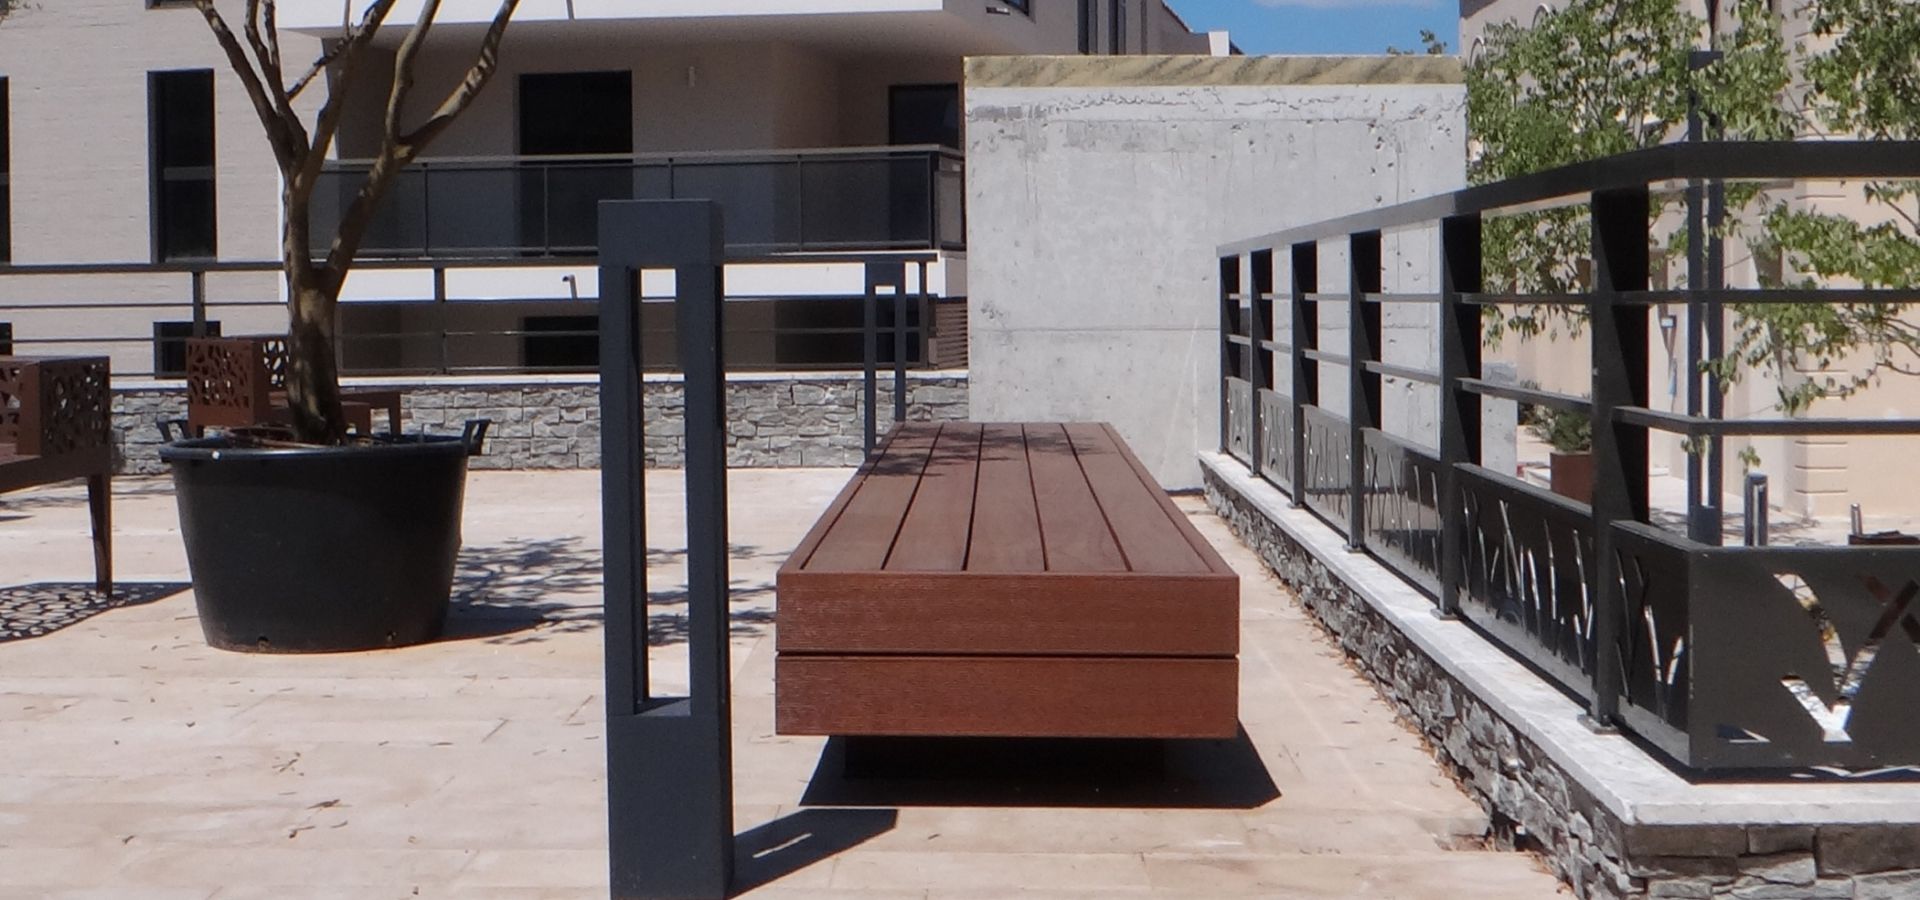 SAINT TROPEZ mobilier urbain design METALCO - banc public bois acier - corbeille rectangulaire